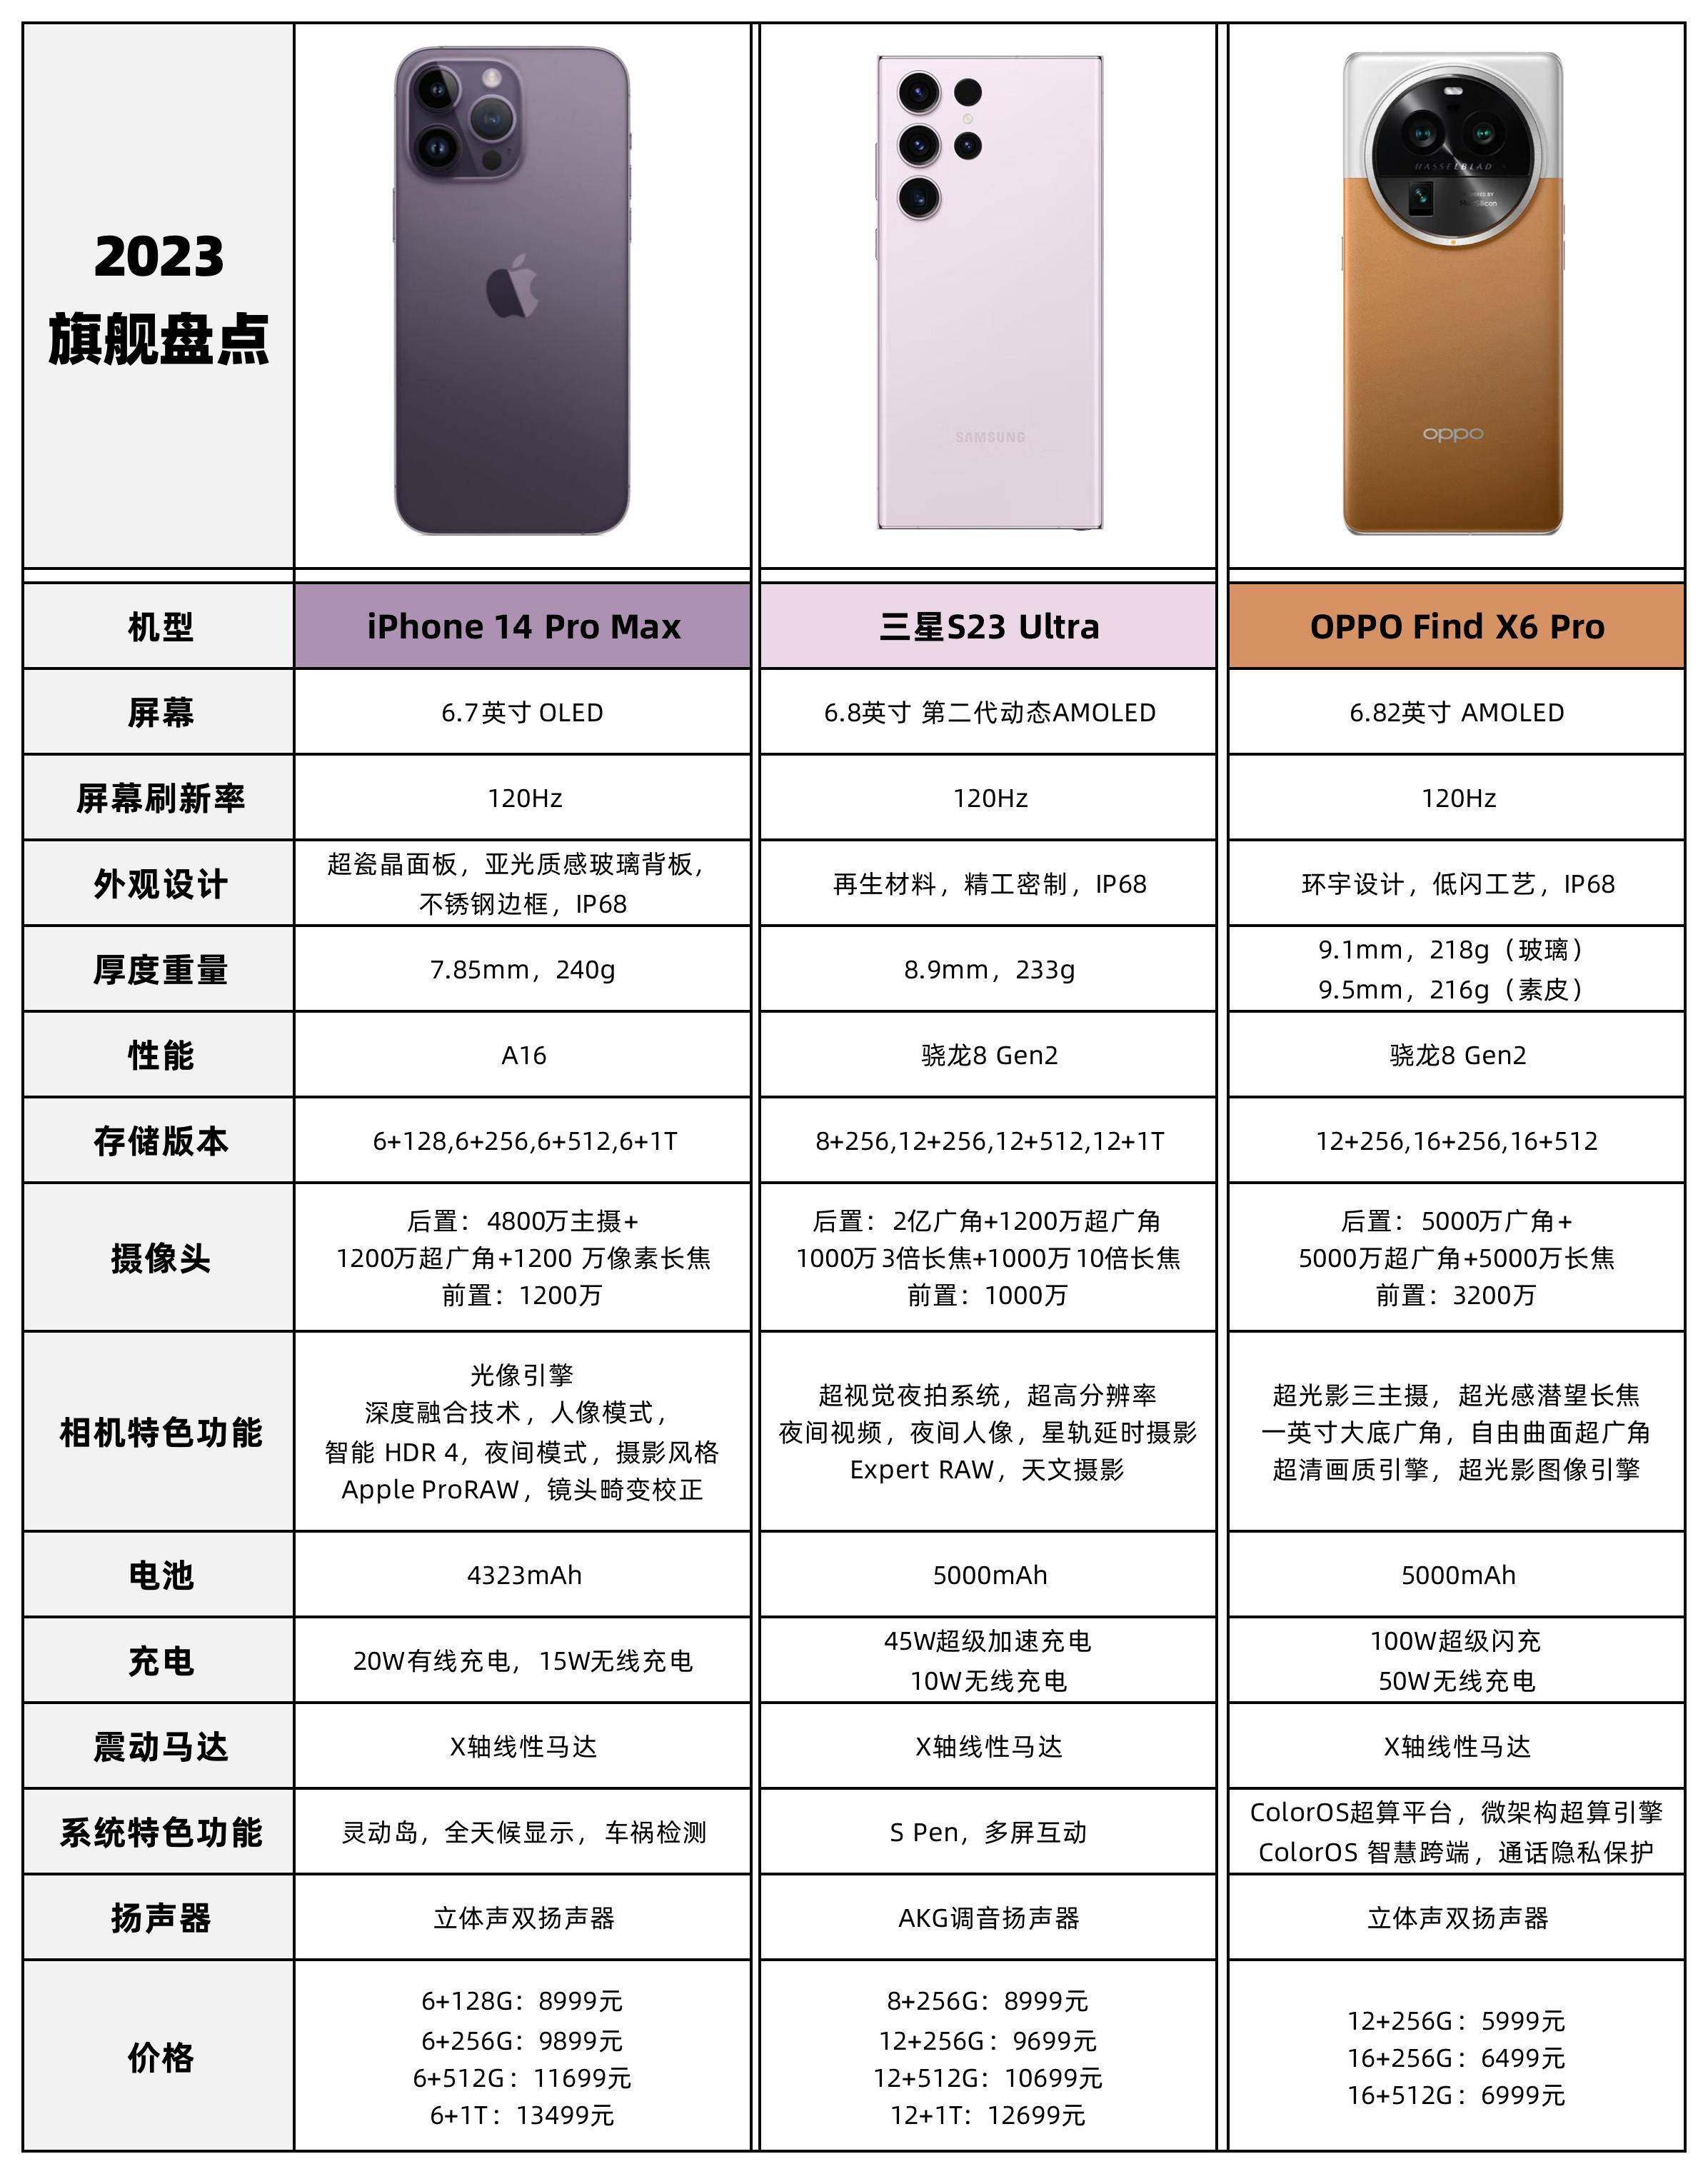 苹果韩版比便宜
:OPPO苹果三星旗舰参数对比，差距三千该选谁？